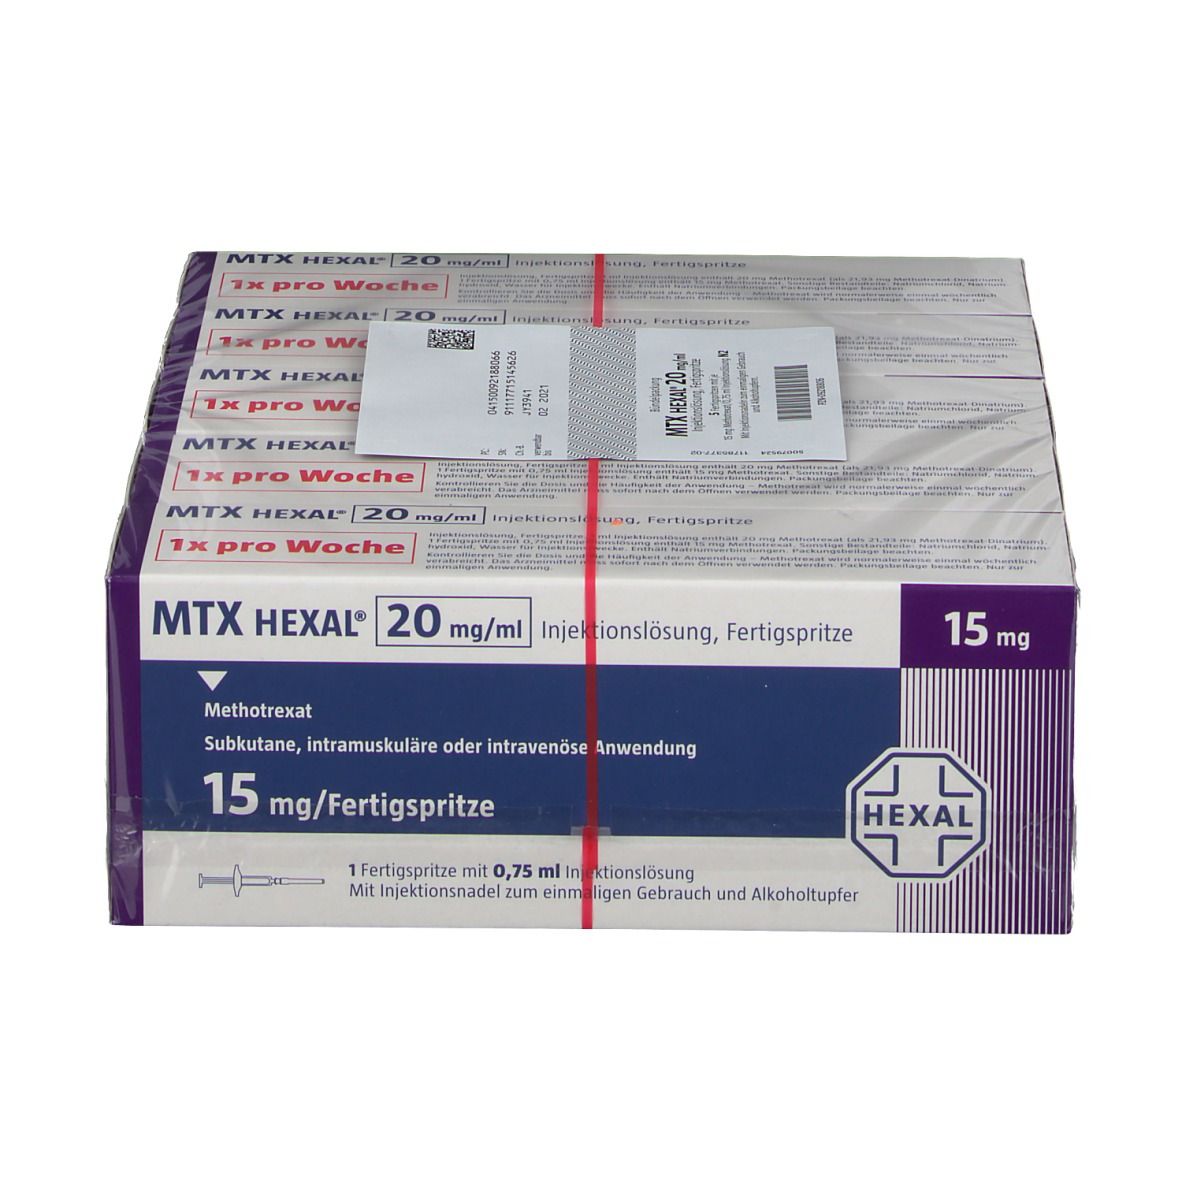 MTX HEXAL® 20 mg/ml 15 mg